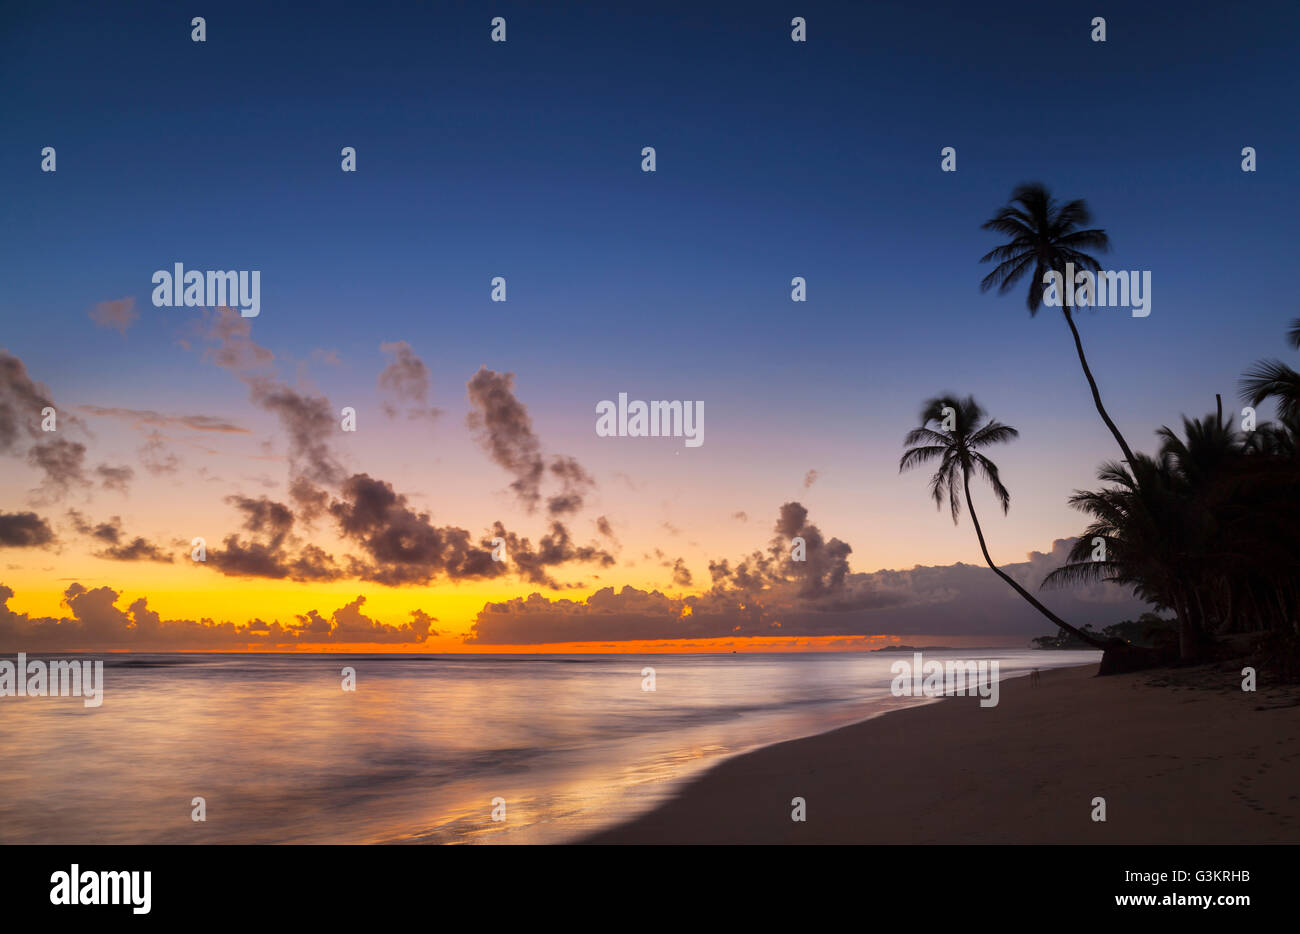 La silhouette du coucher de soleil avec des palmiers sur la plage, la République dominicaine, les Caraïbes Banque D'Images